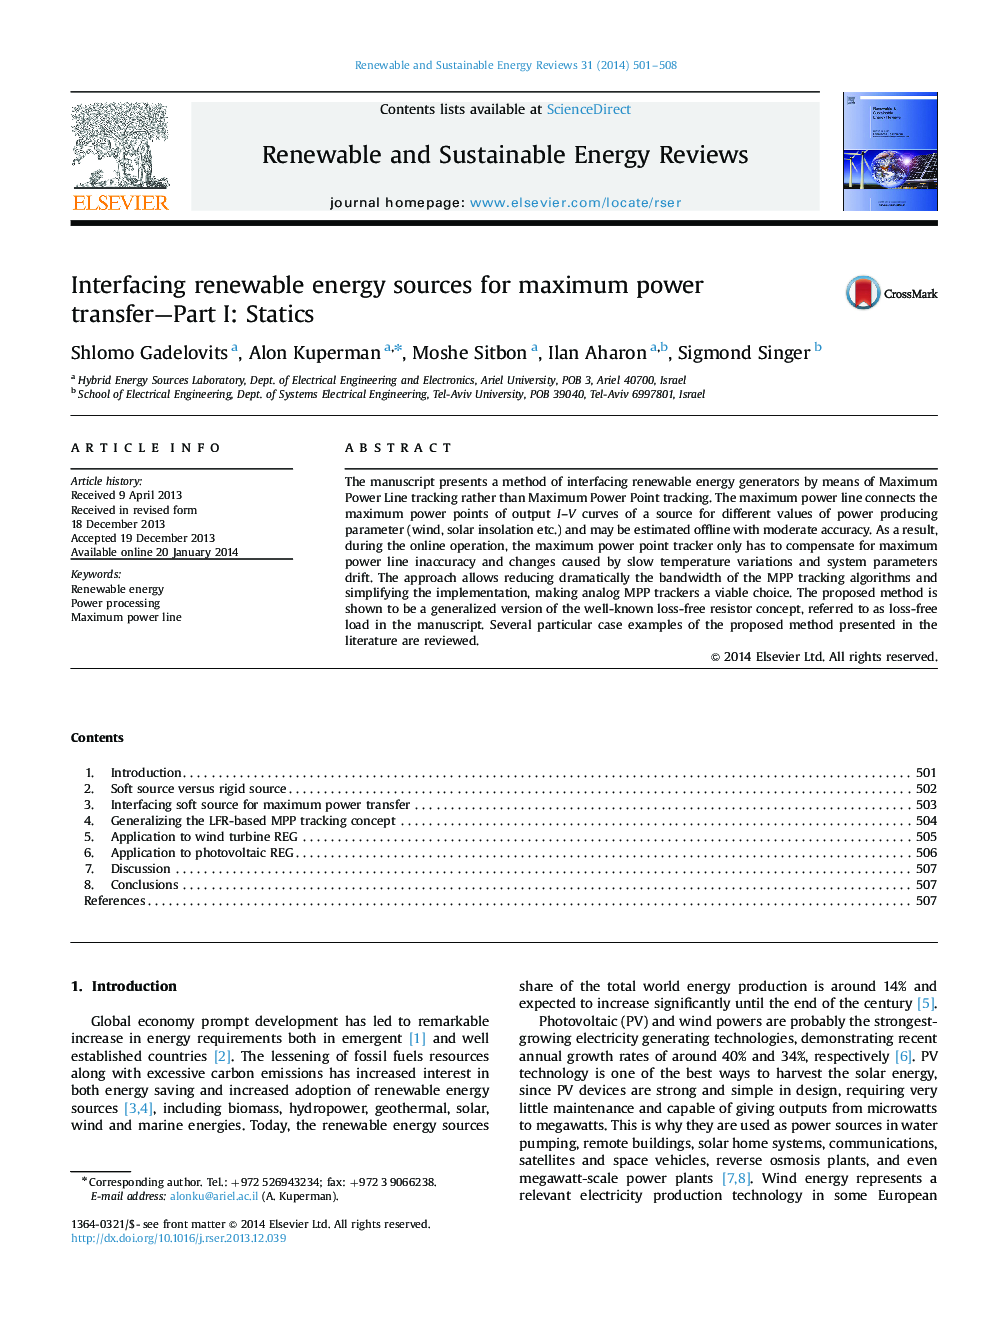 پیوند منابع انرژی تجدیدپذیر برای انتقال حداکثر قدرت - بخش 1: استاتیک 